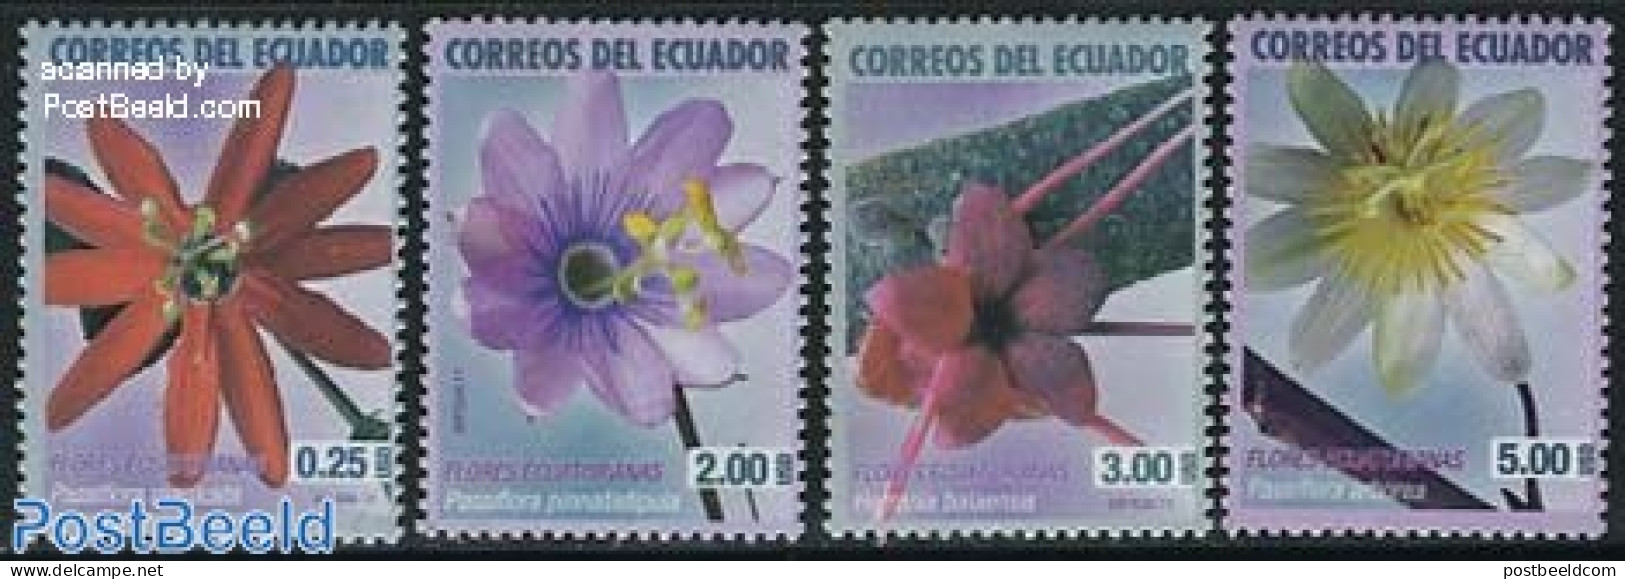 Ecuador 2011 Flowers 4v, Mint NH, Nature - Flowers & Plants - Ecuador